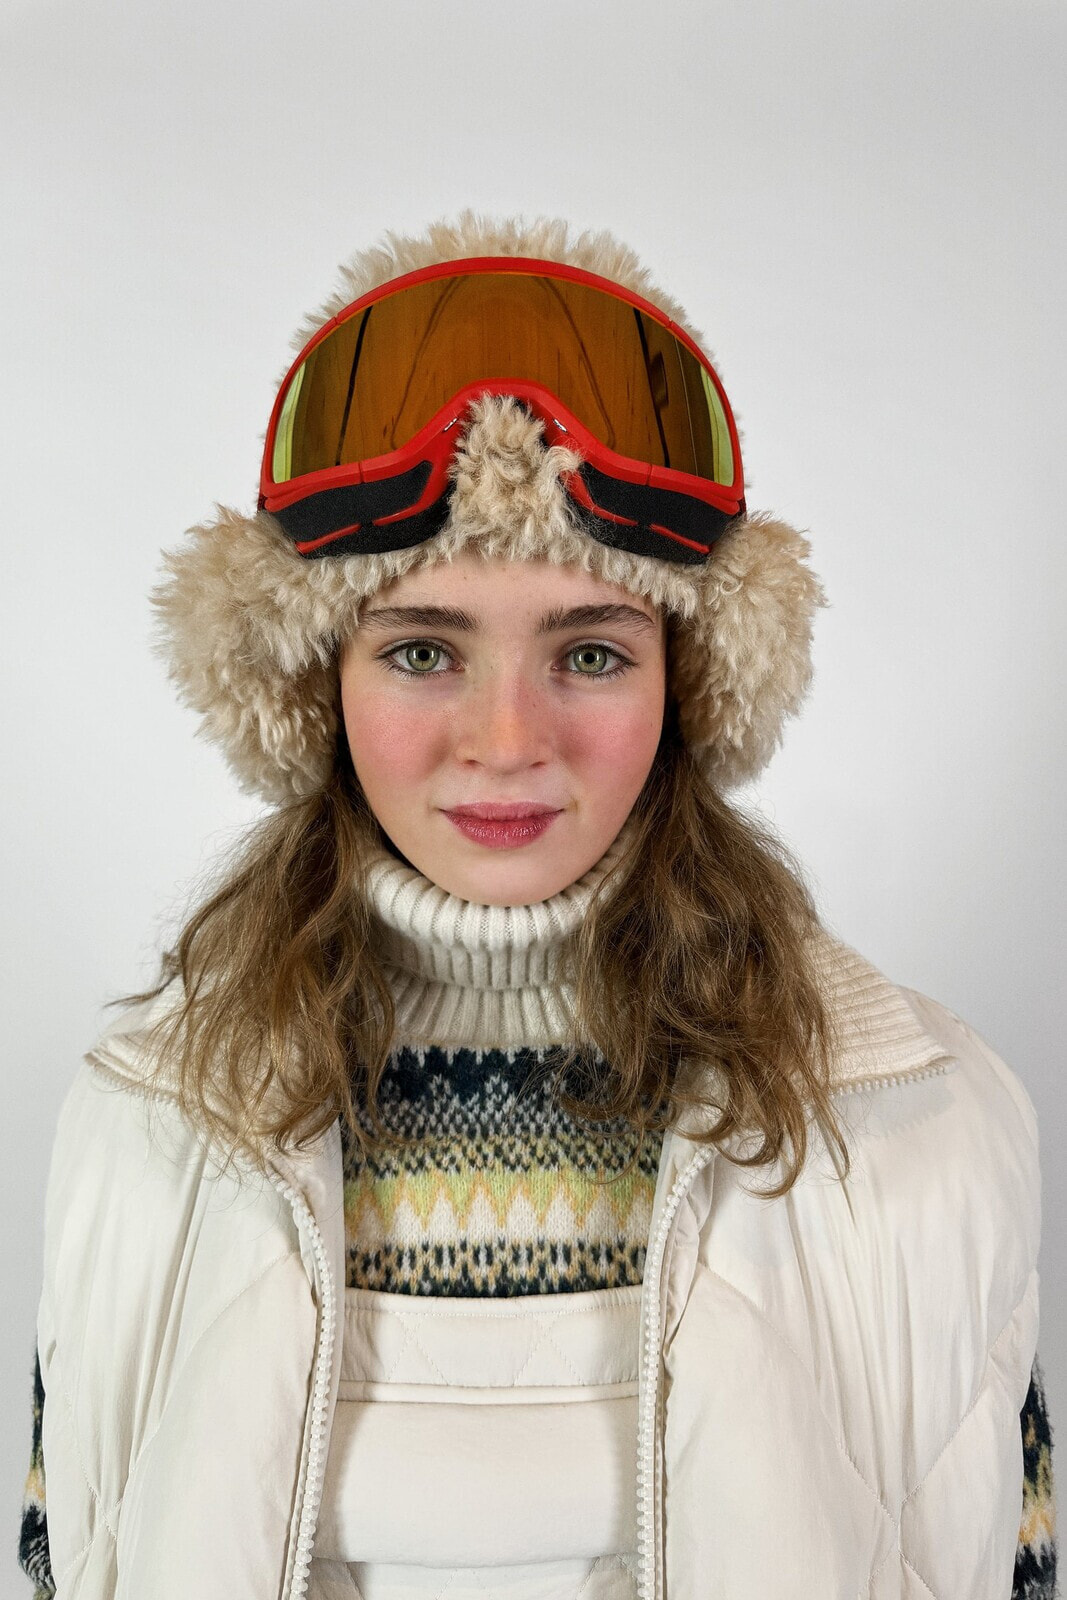 Jacquard knit ski dress